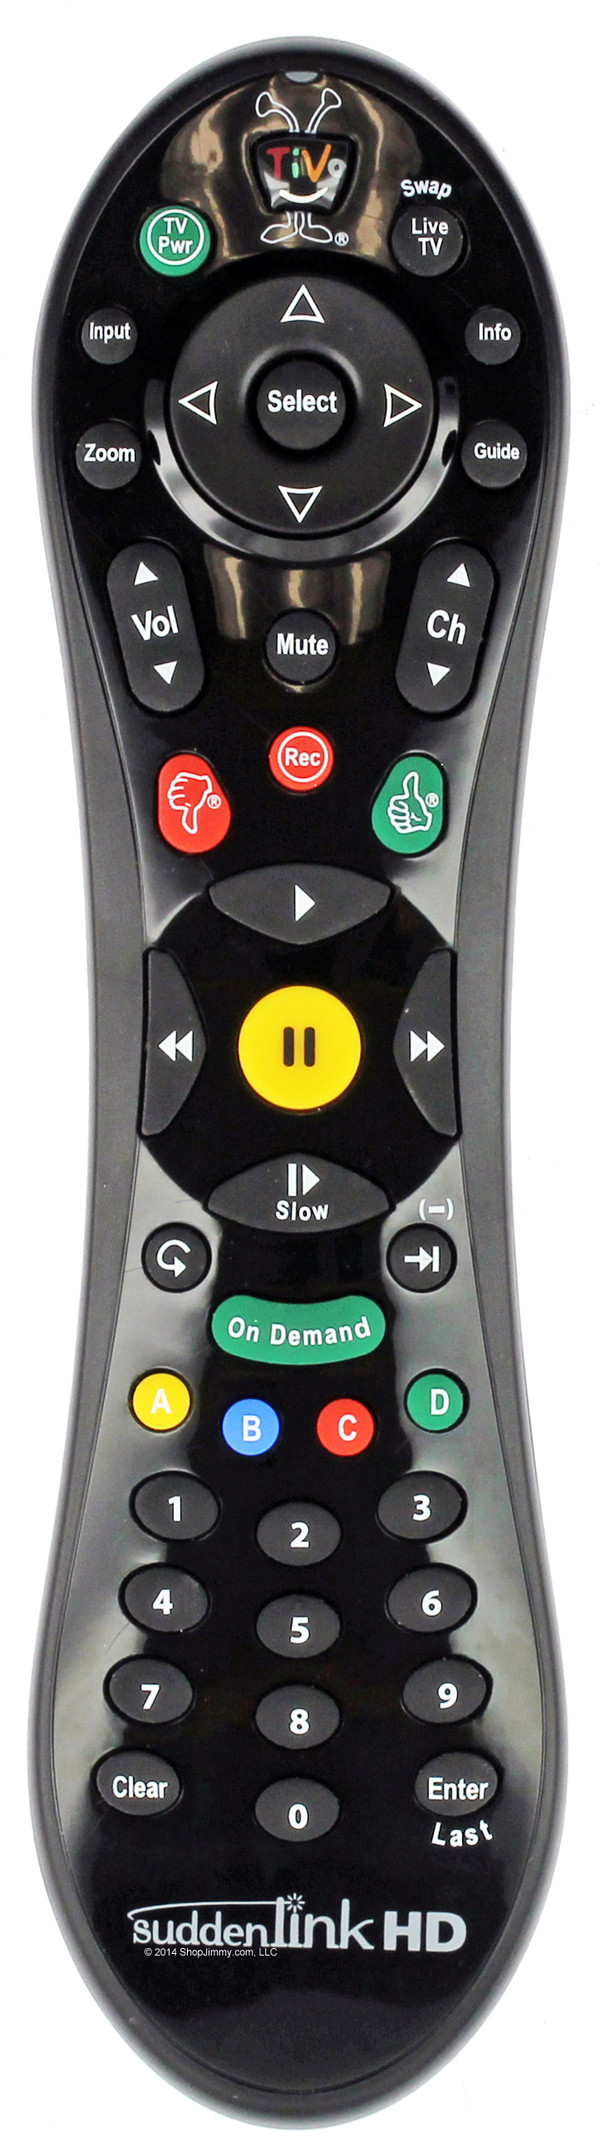 SuddenLink TiVo Remote Control - Version 2